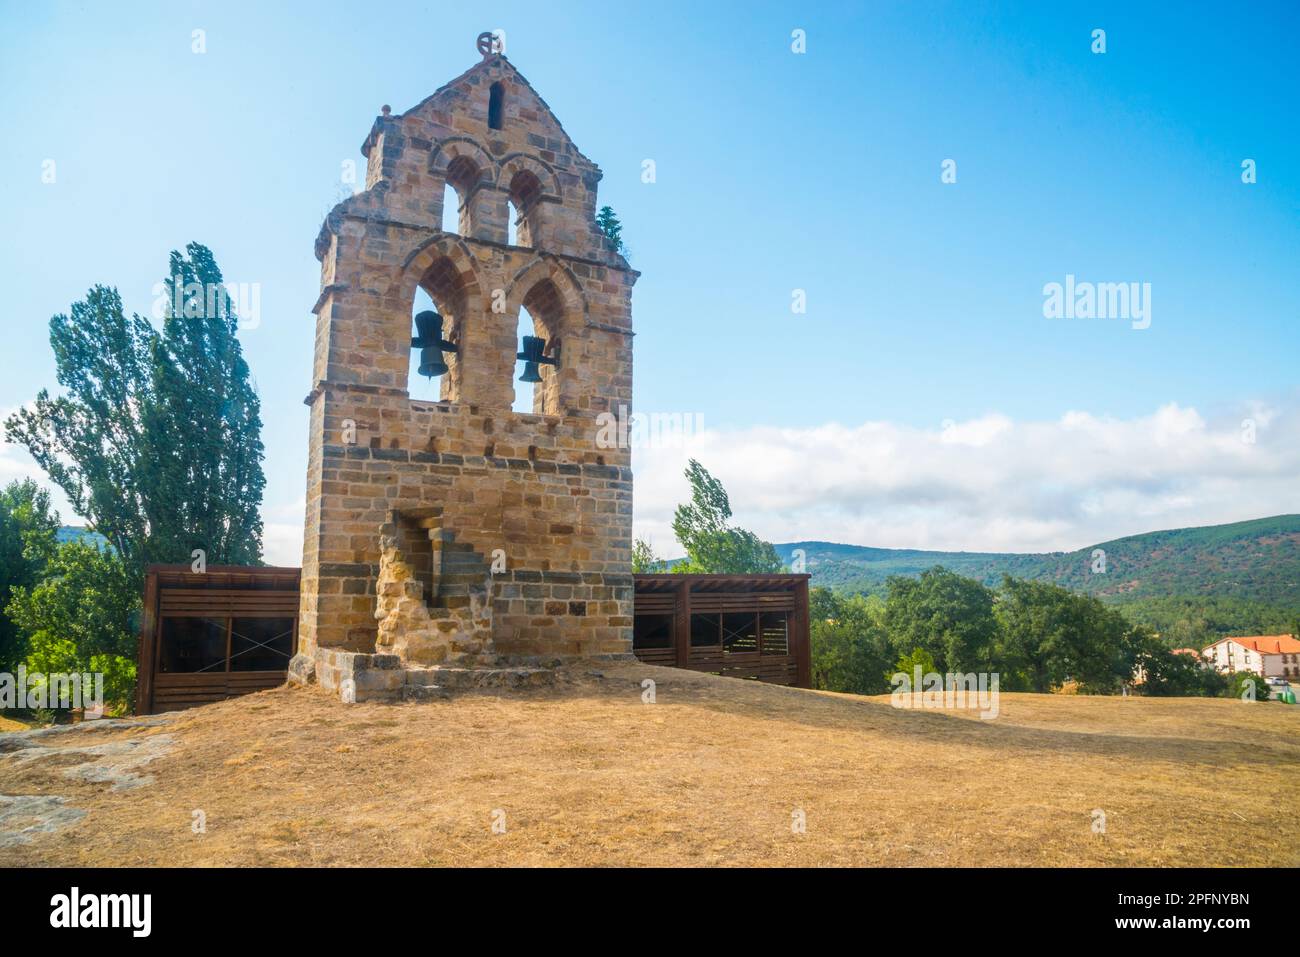 Clocher de l'église de la grotte. Santa Maria de Valverde, Cantabrie, Espagne. Banque D'Images